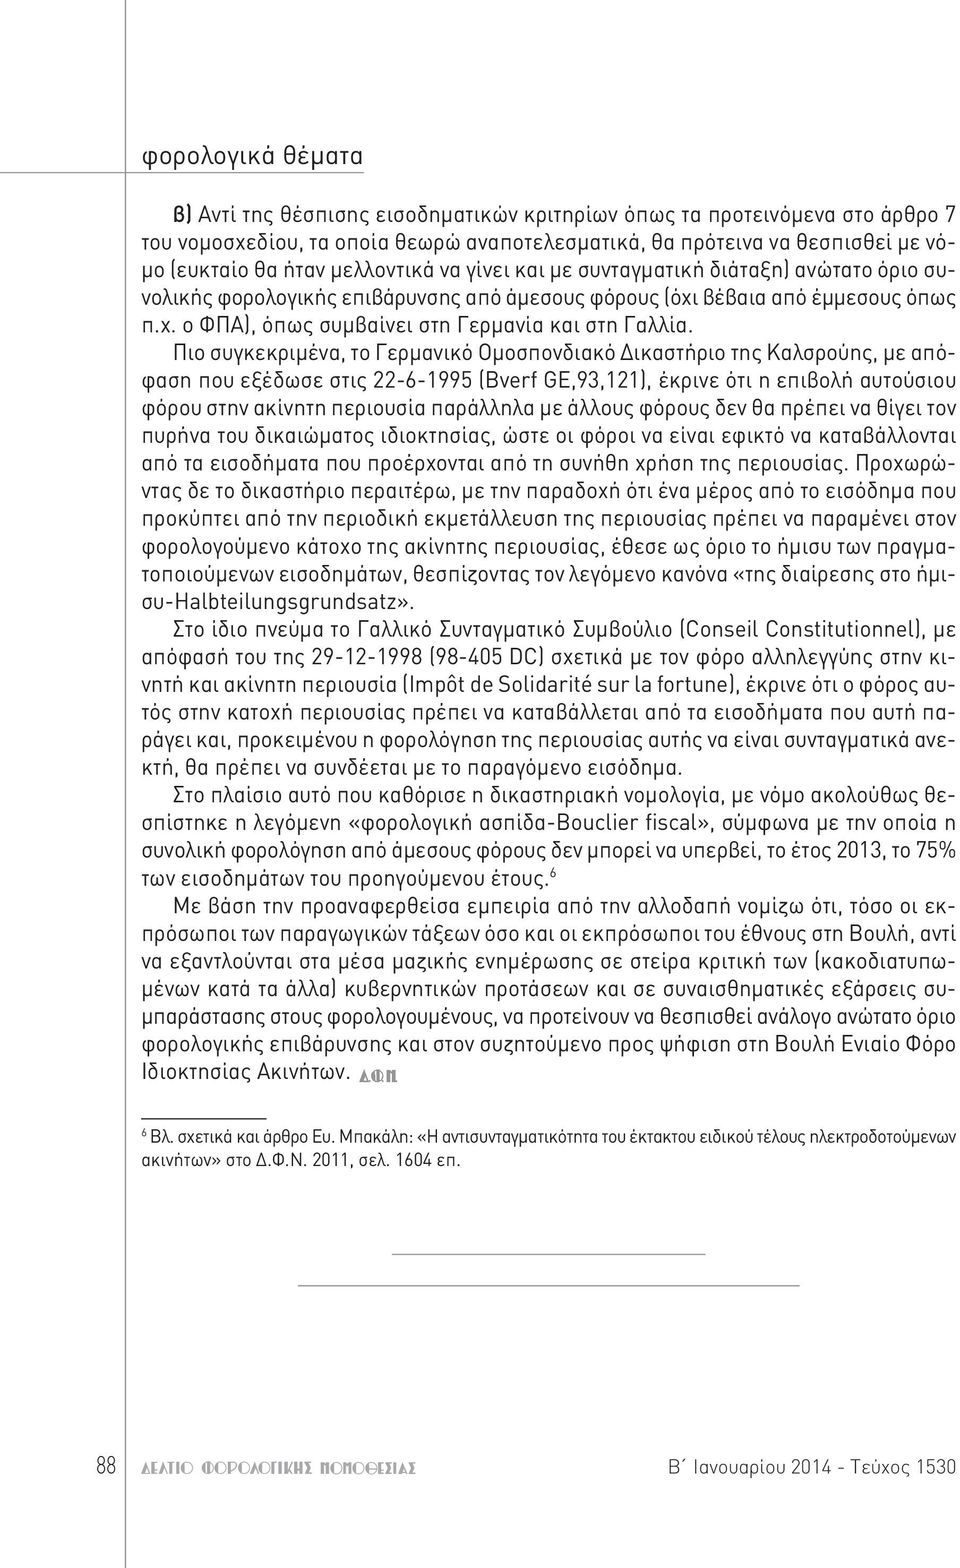 Πιο συγκεκριμένα, το Γερμανικό Ομοσπονδιακό Δικαστήριο της Καλσρούης, με απόφαση που εξέδωσε στις 22-6-1995 (Bverf GE,93,121), έκρινε ότι η επιβολή αυτούσιου φόρου στην ακίνητη περιουσία παράλληλα με